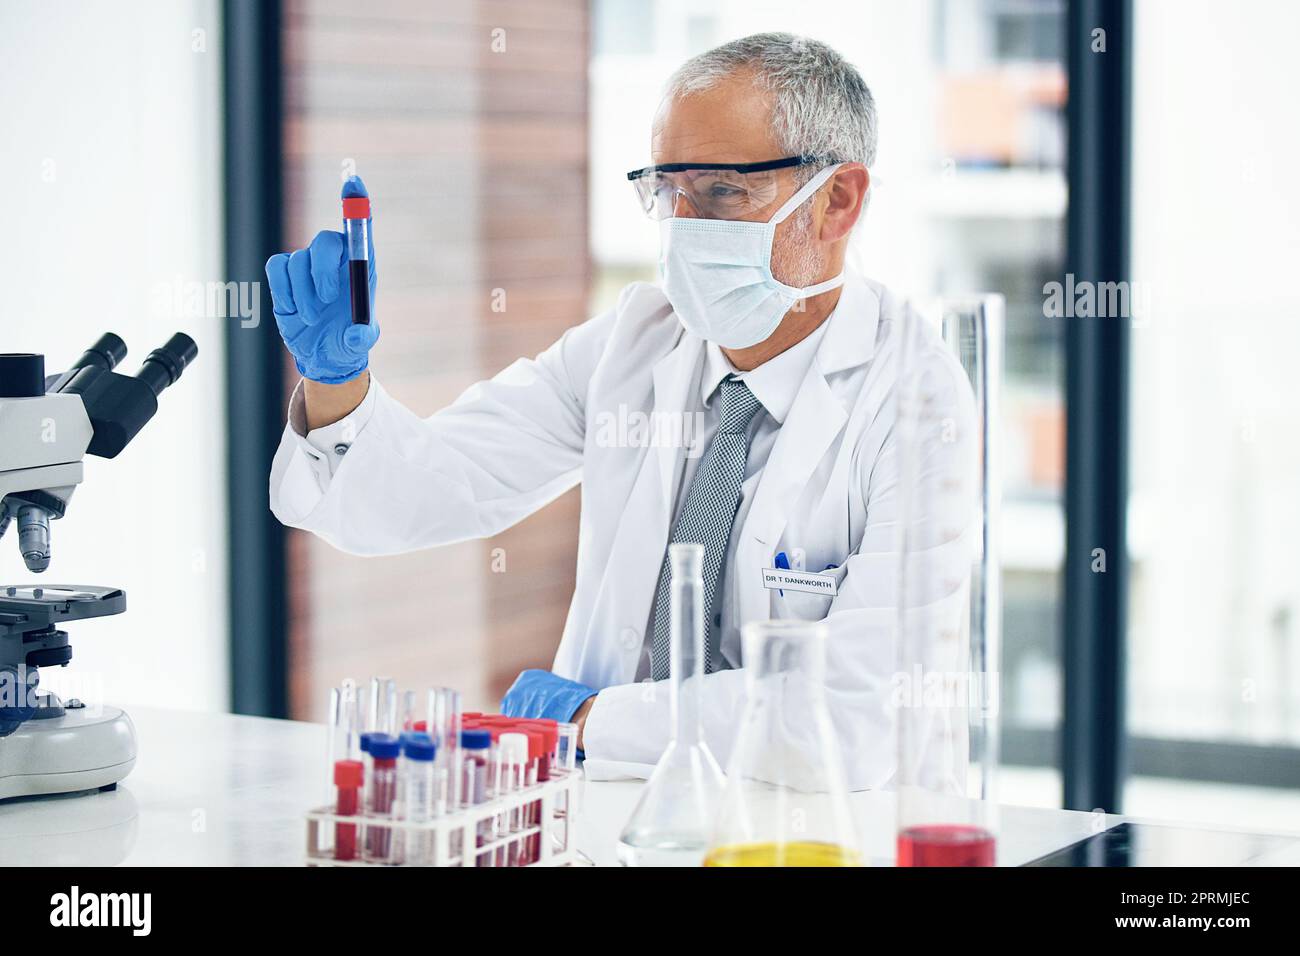 Un scientifique qui examine un tube à essai dans un laboratoire étudie en vue d'améliorer la santé humaine. Banque D'Images